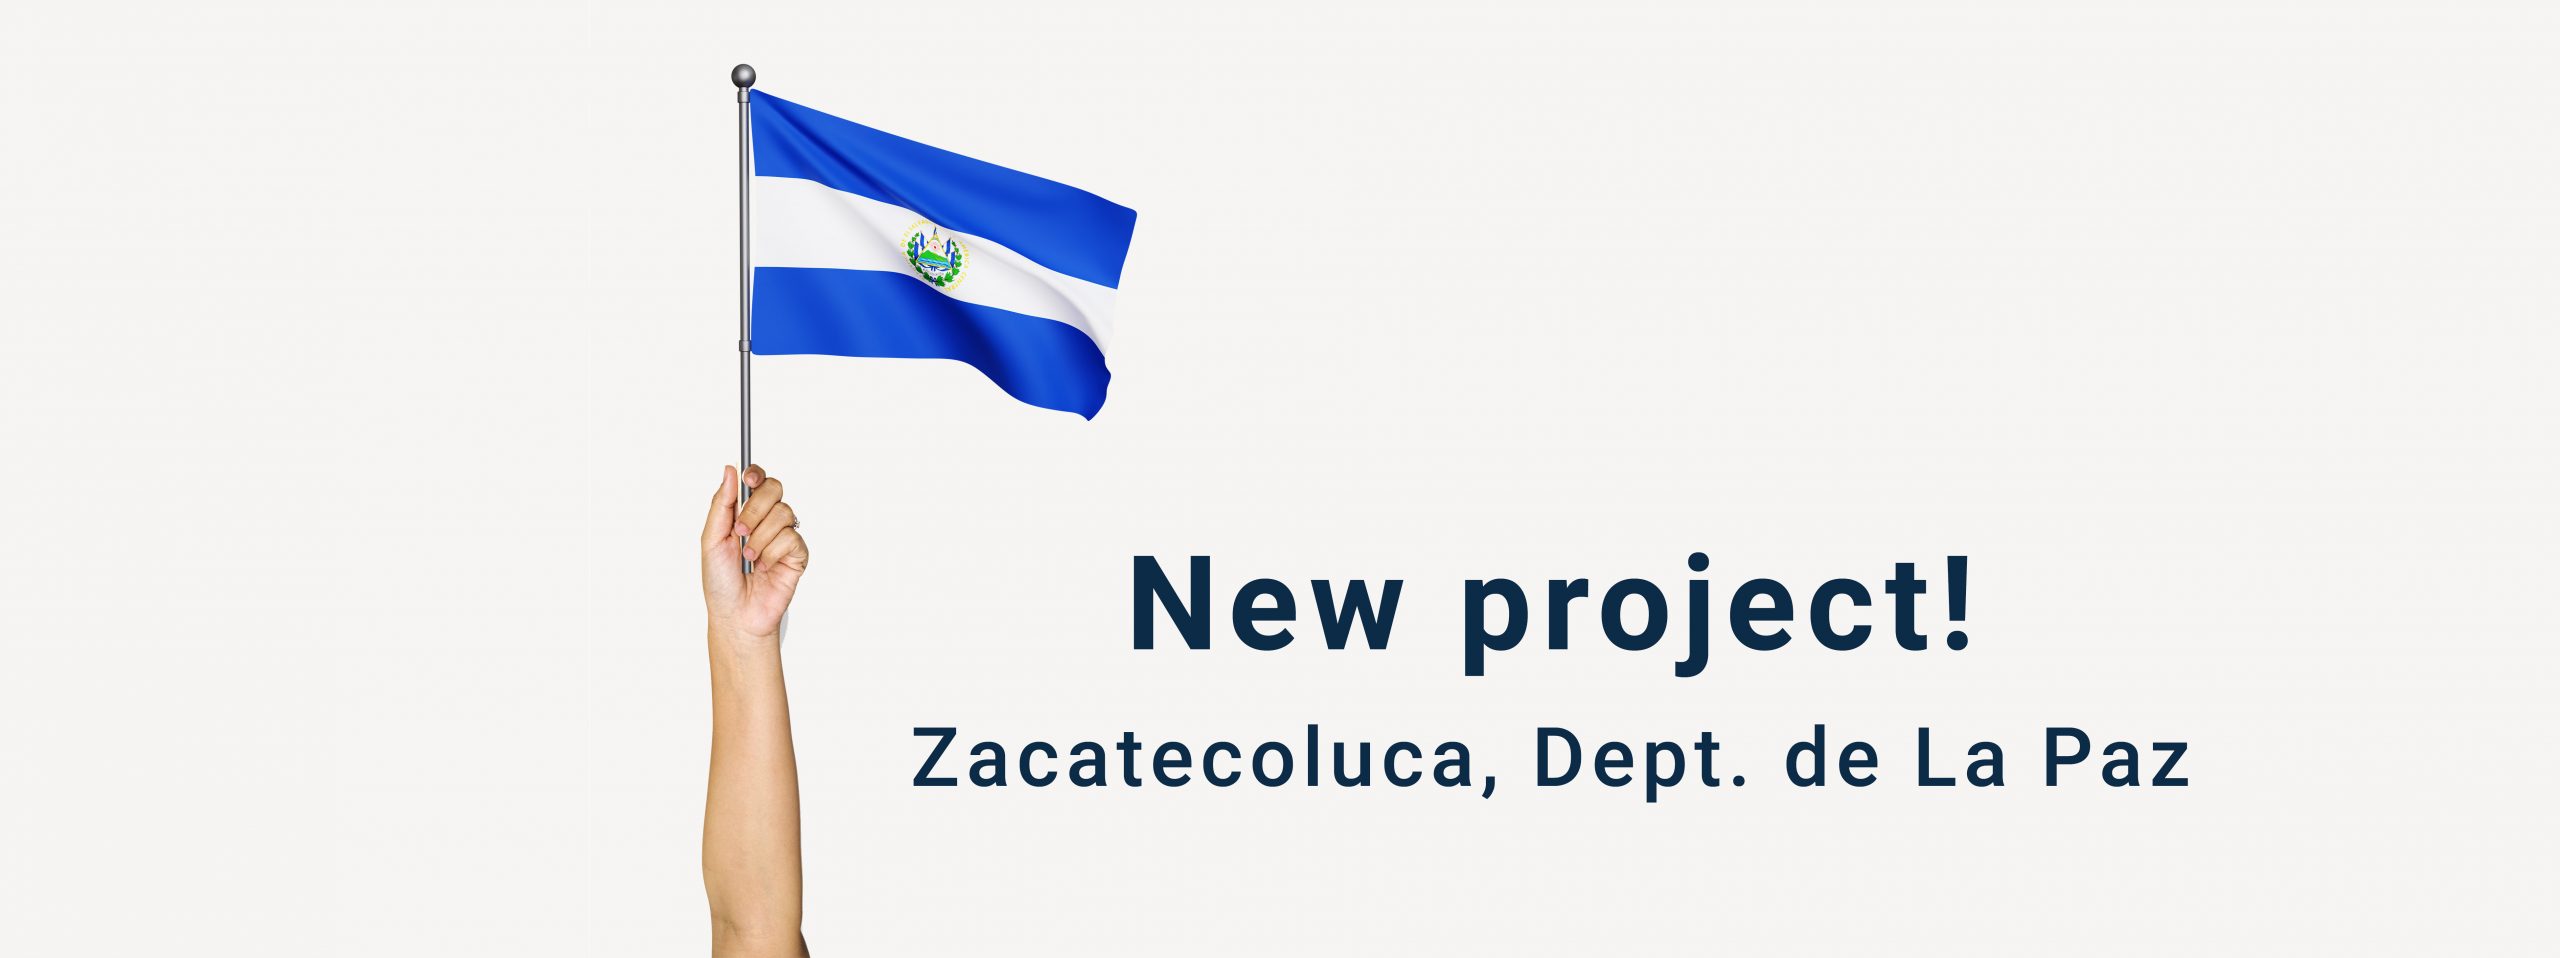 Solar Project El Salvador Zacatecoluca